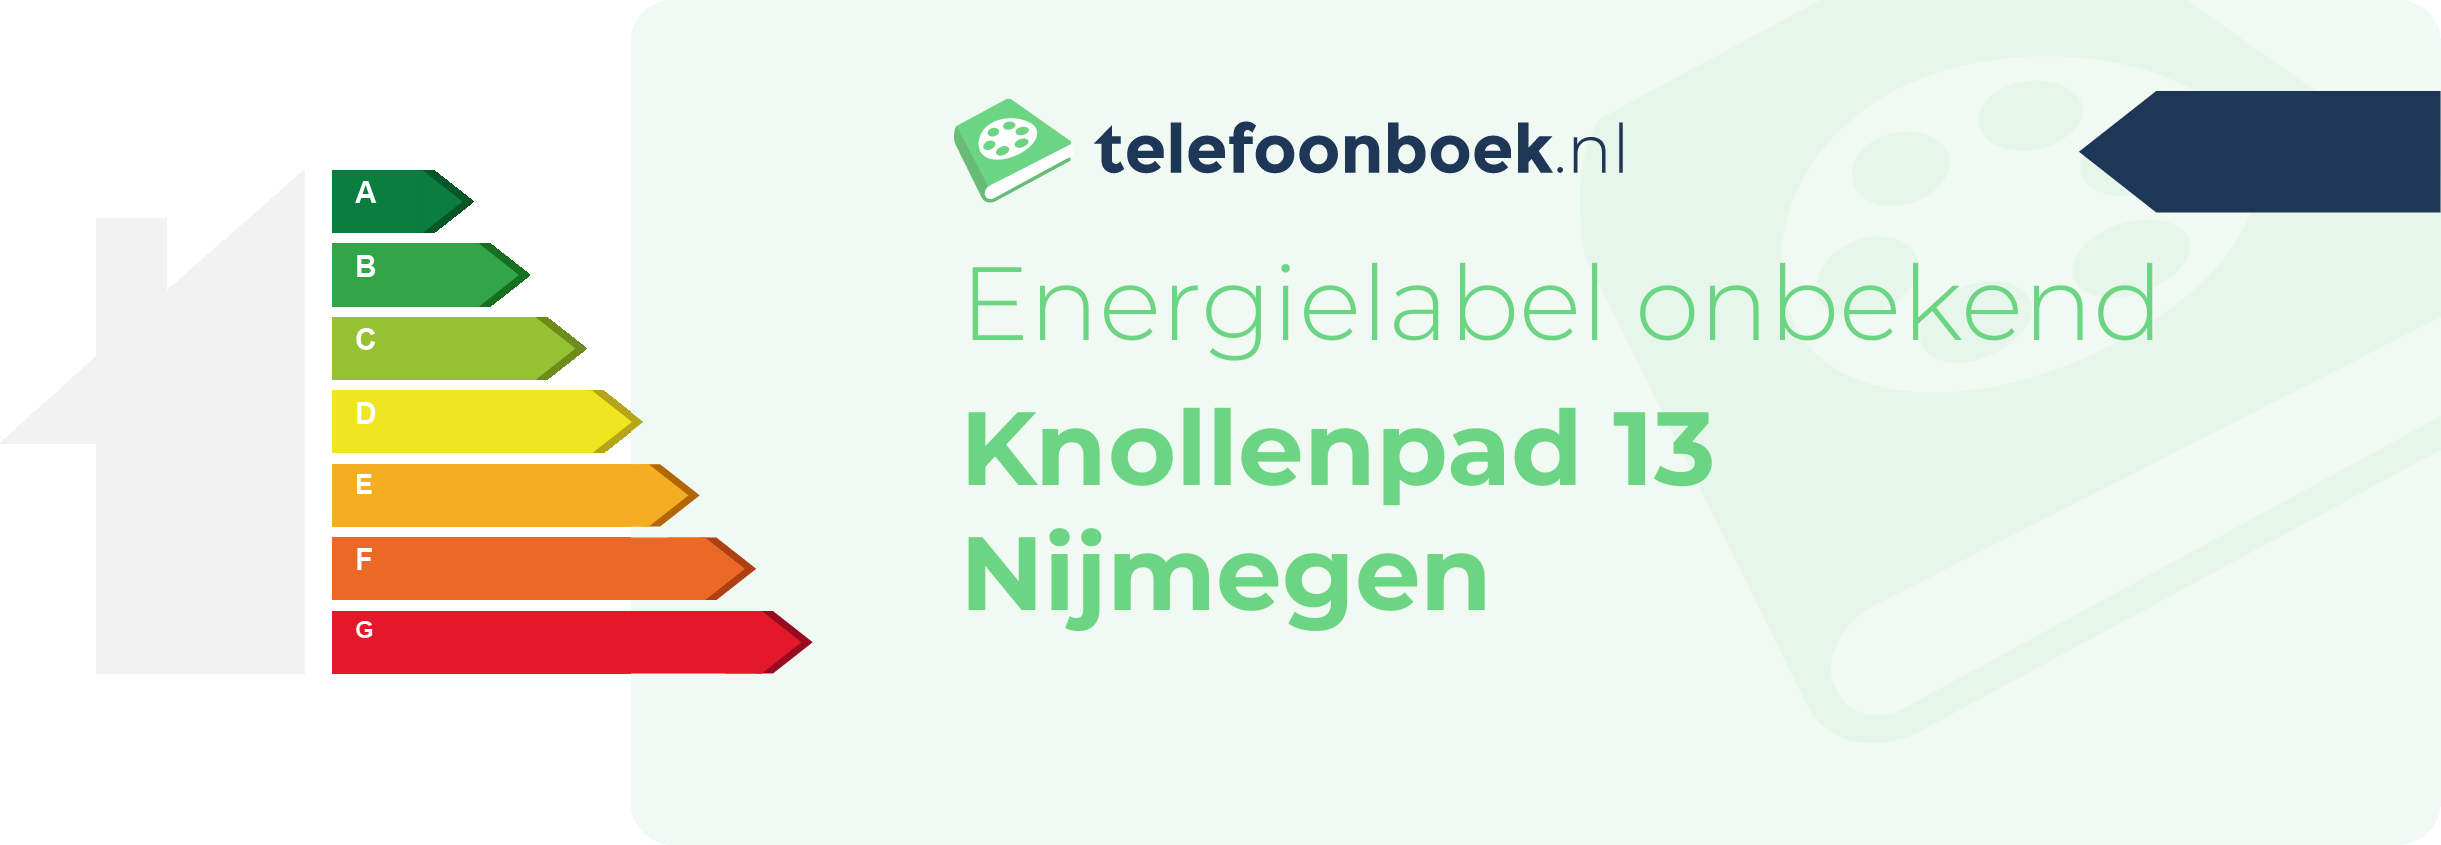 Energielabel Knollenpad 13 Nijmegen